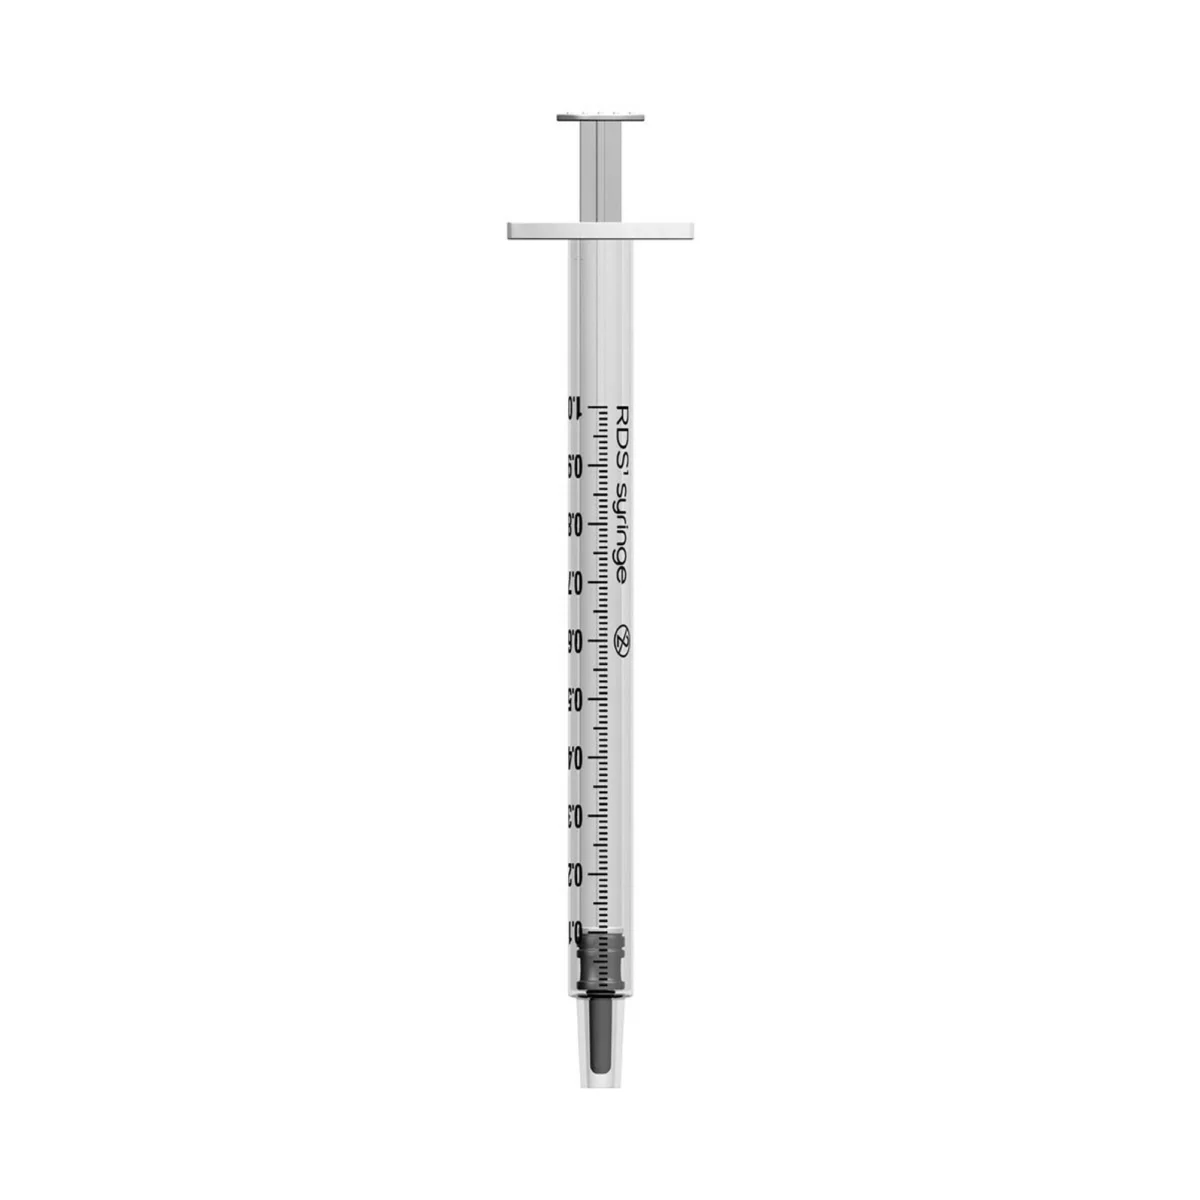 unisharp 1ml reduced dead space syringe 57950 1 64979